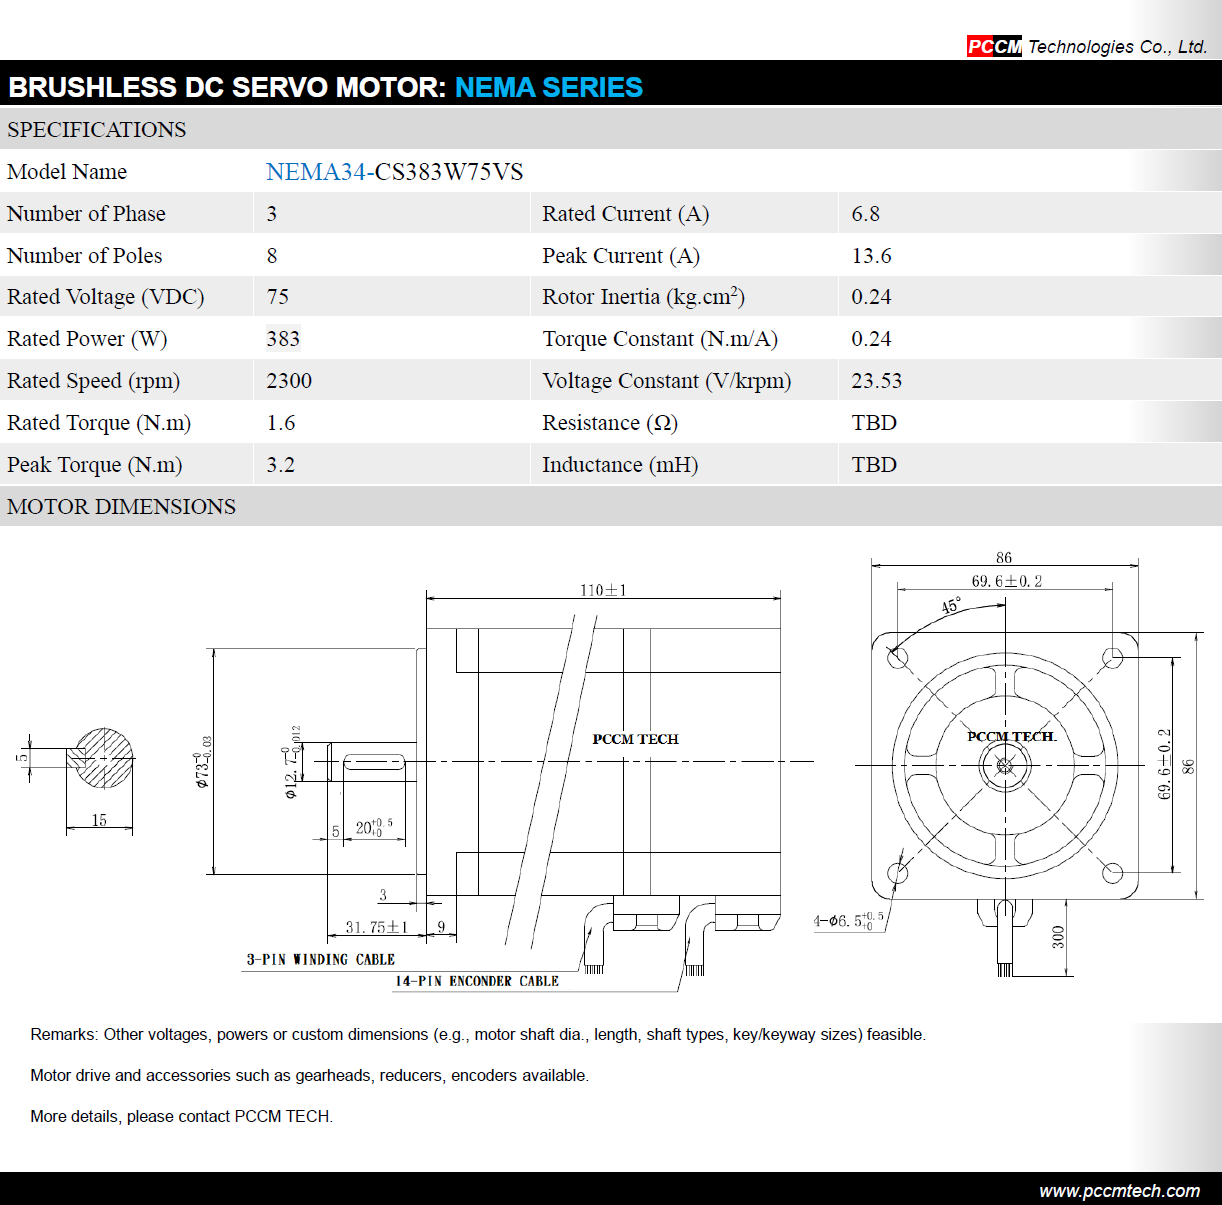 NEMA Series BLDC Servo Motor PCCM TECH